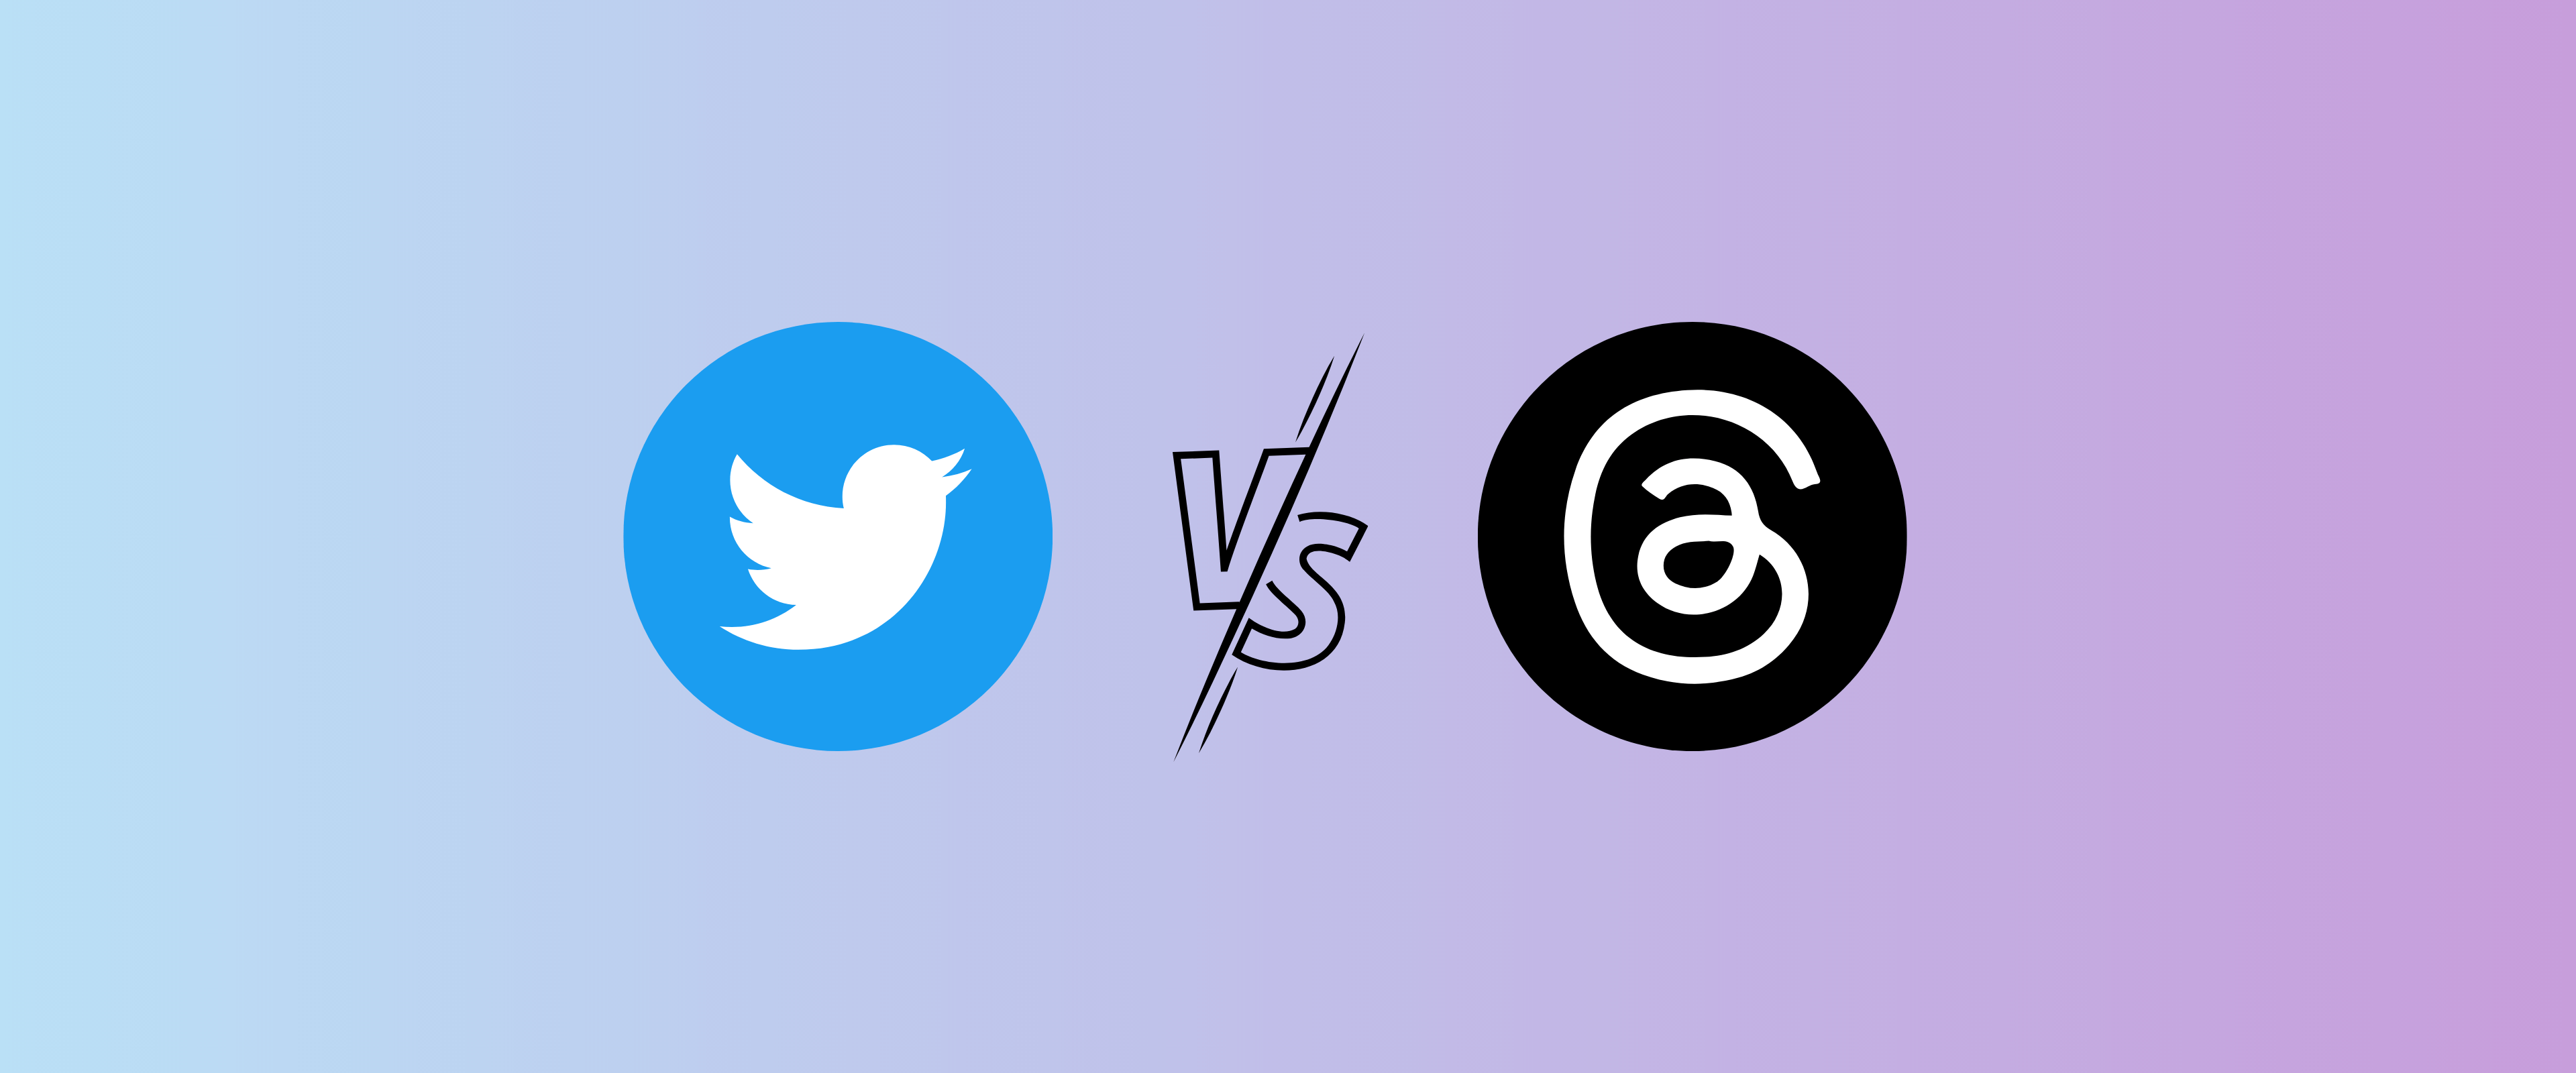 Threads vs. Twitter